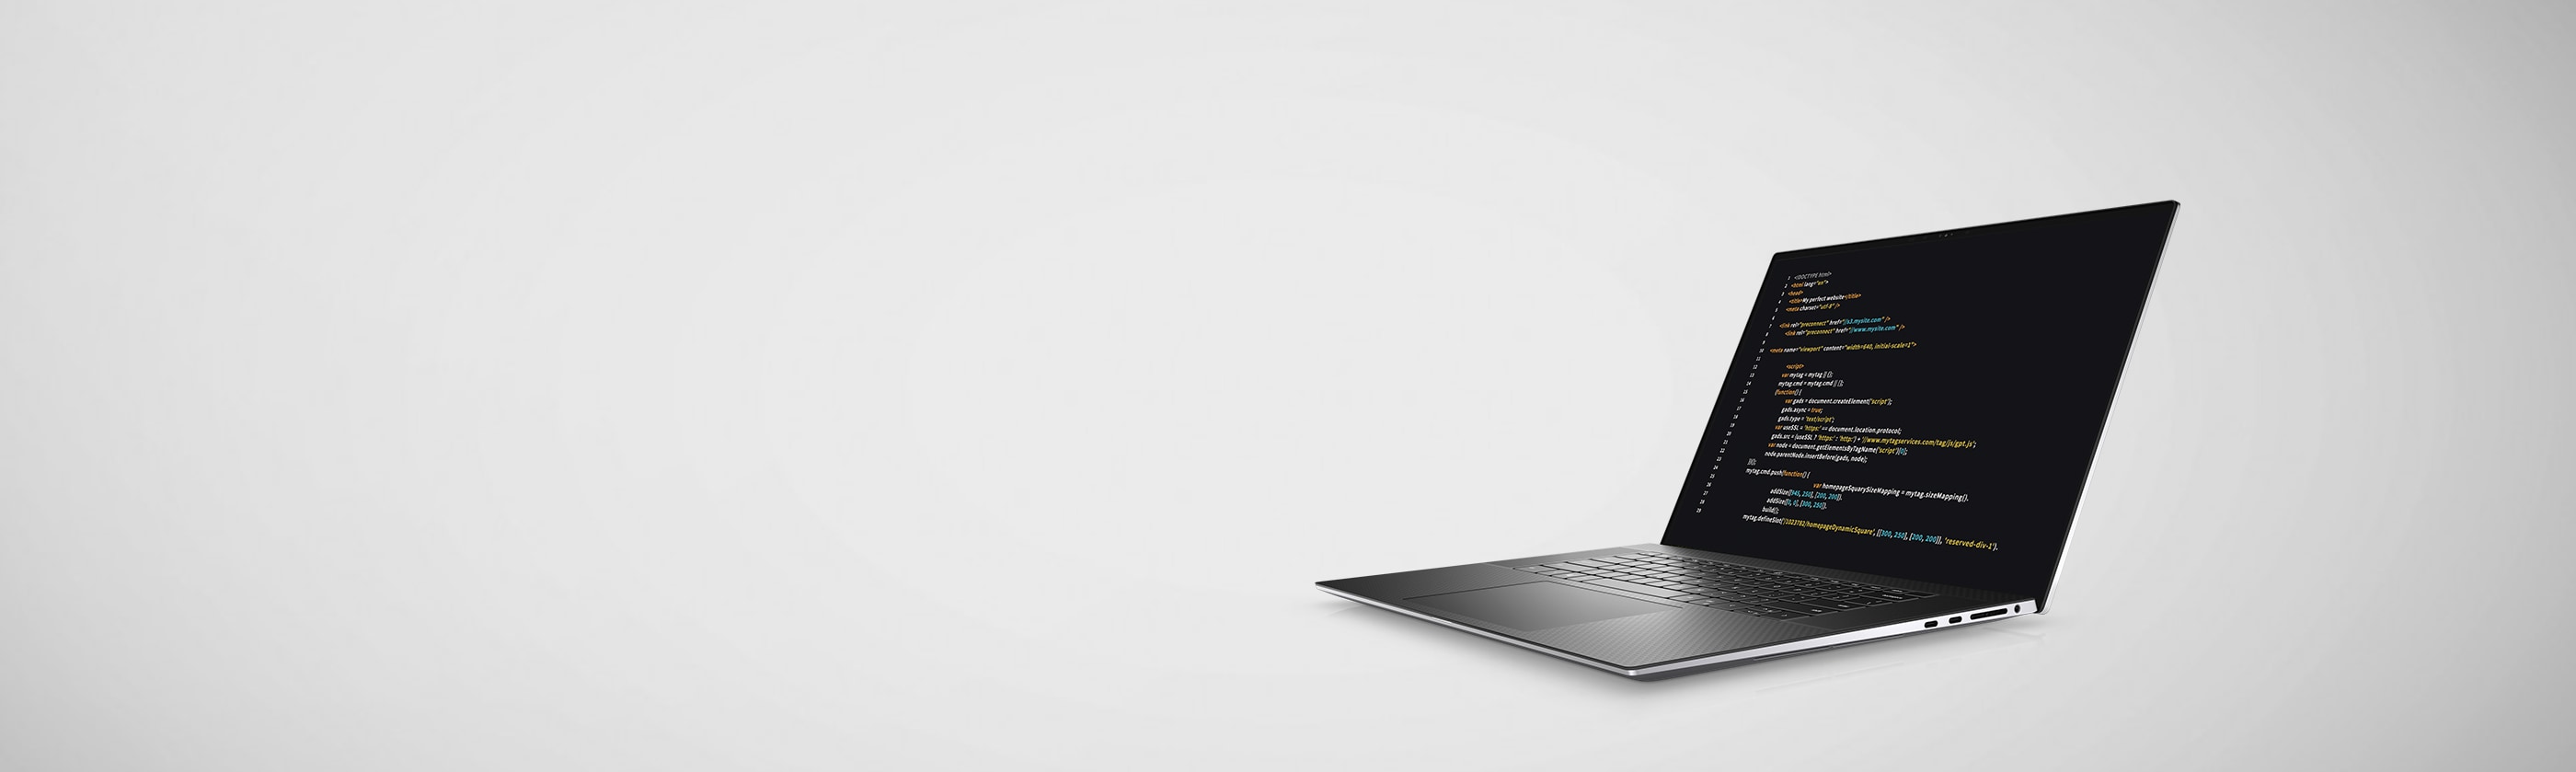 Best Laptops for Programming | Dell USA